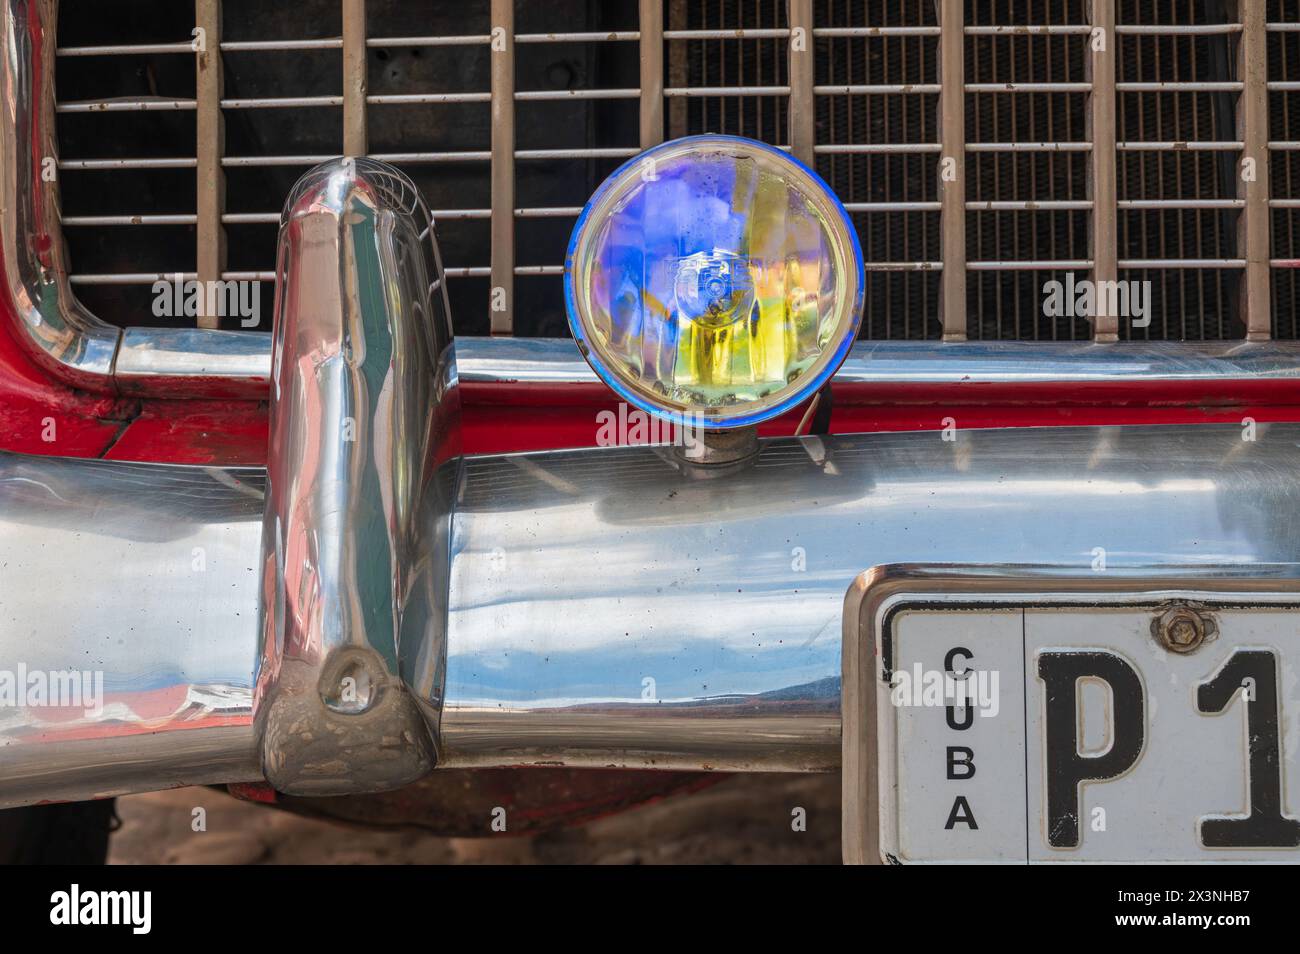 Gros plan sur une voiture ancienne américaine restaurée dans les rues de Trinidad, Cuba. Banque D'Images